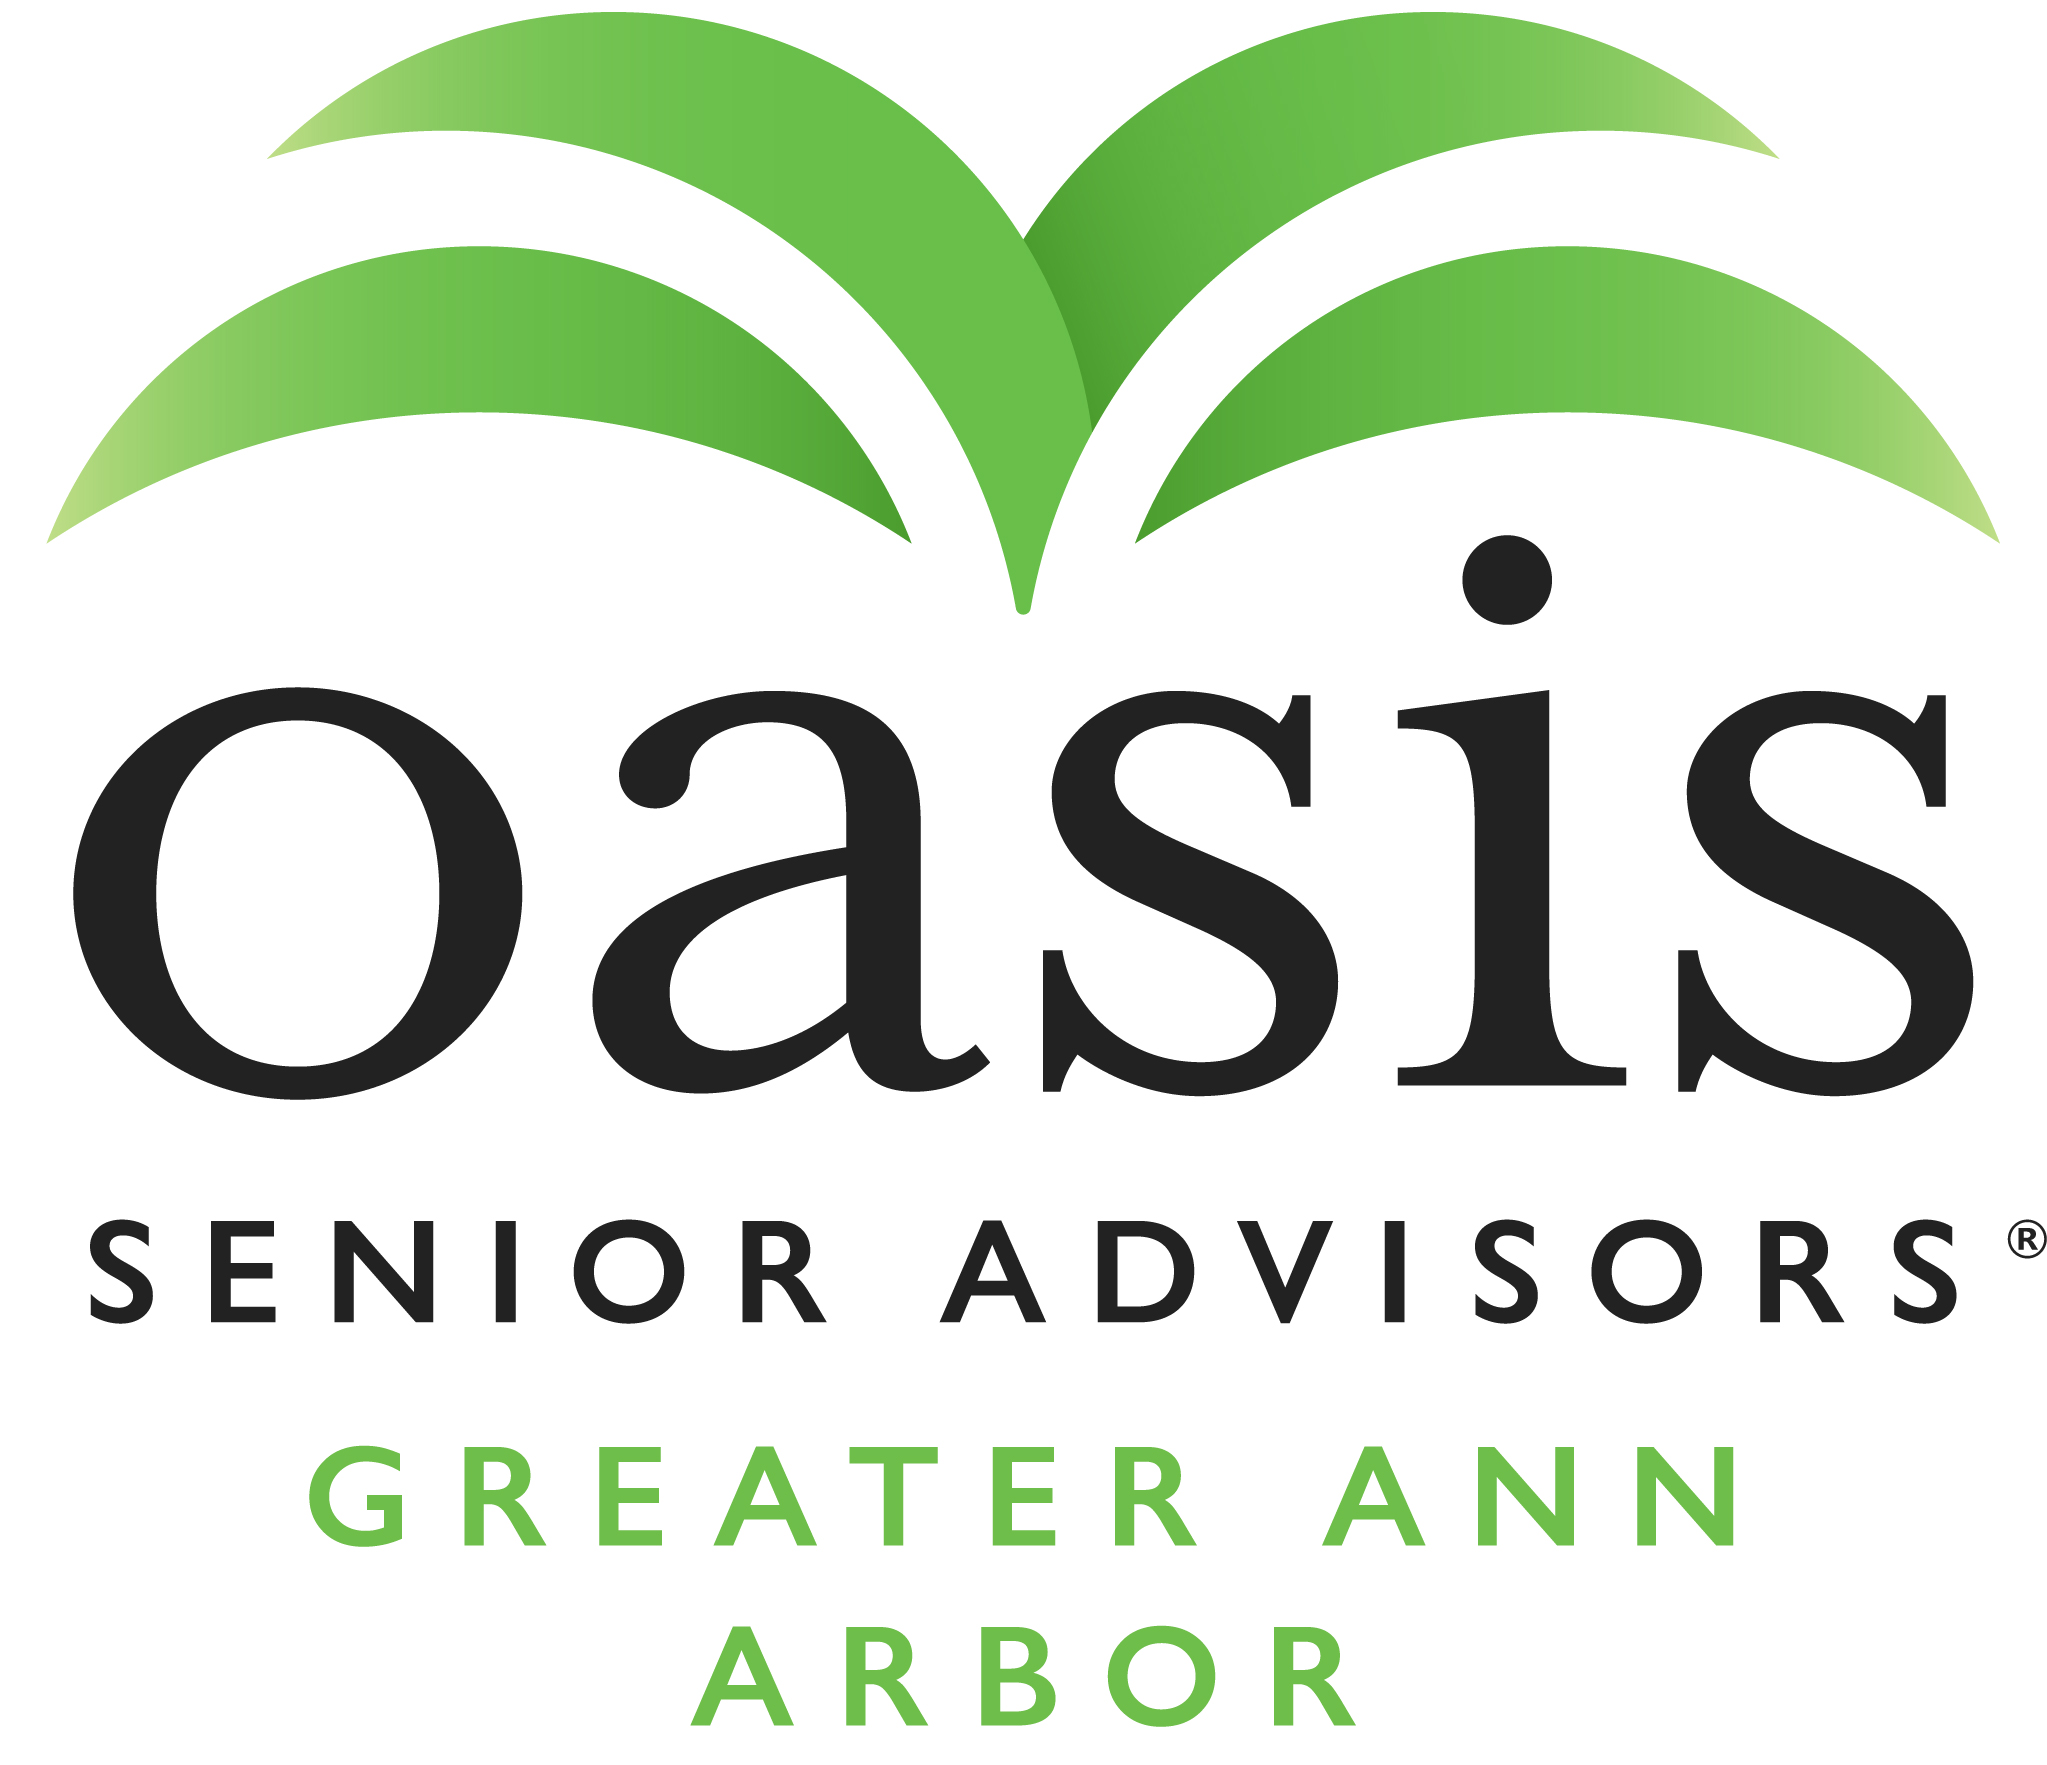 E. Oasis Senior Advisors - Greater Ann Arbor (Tier 4)